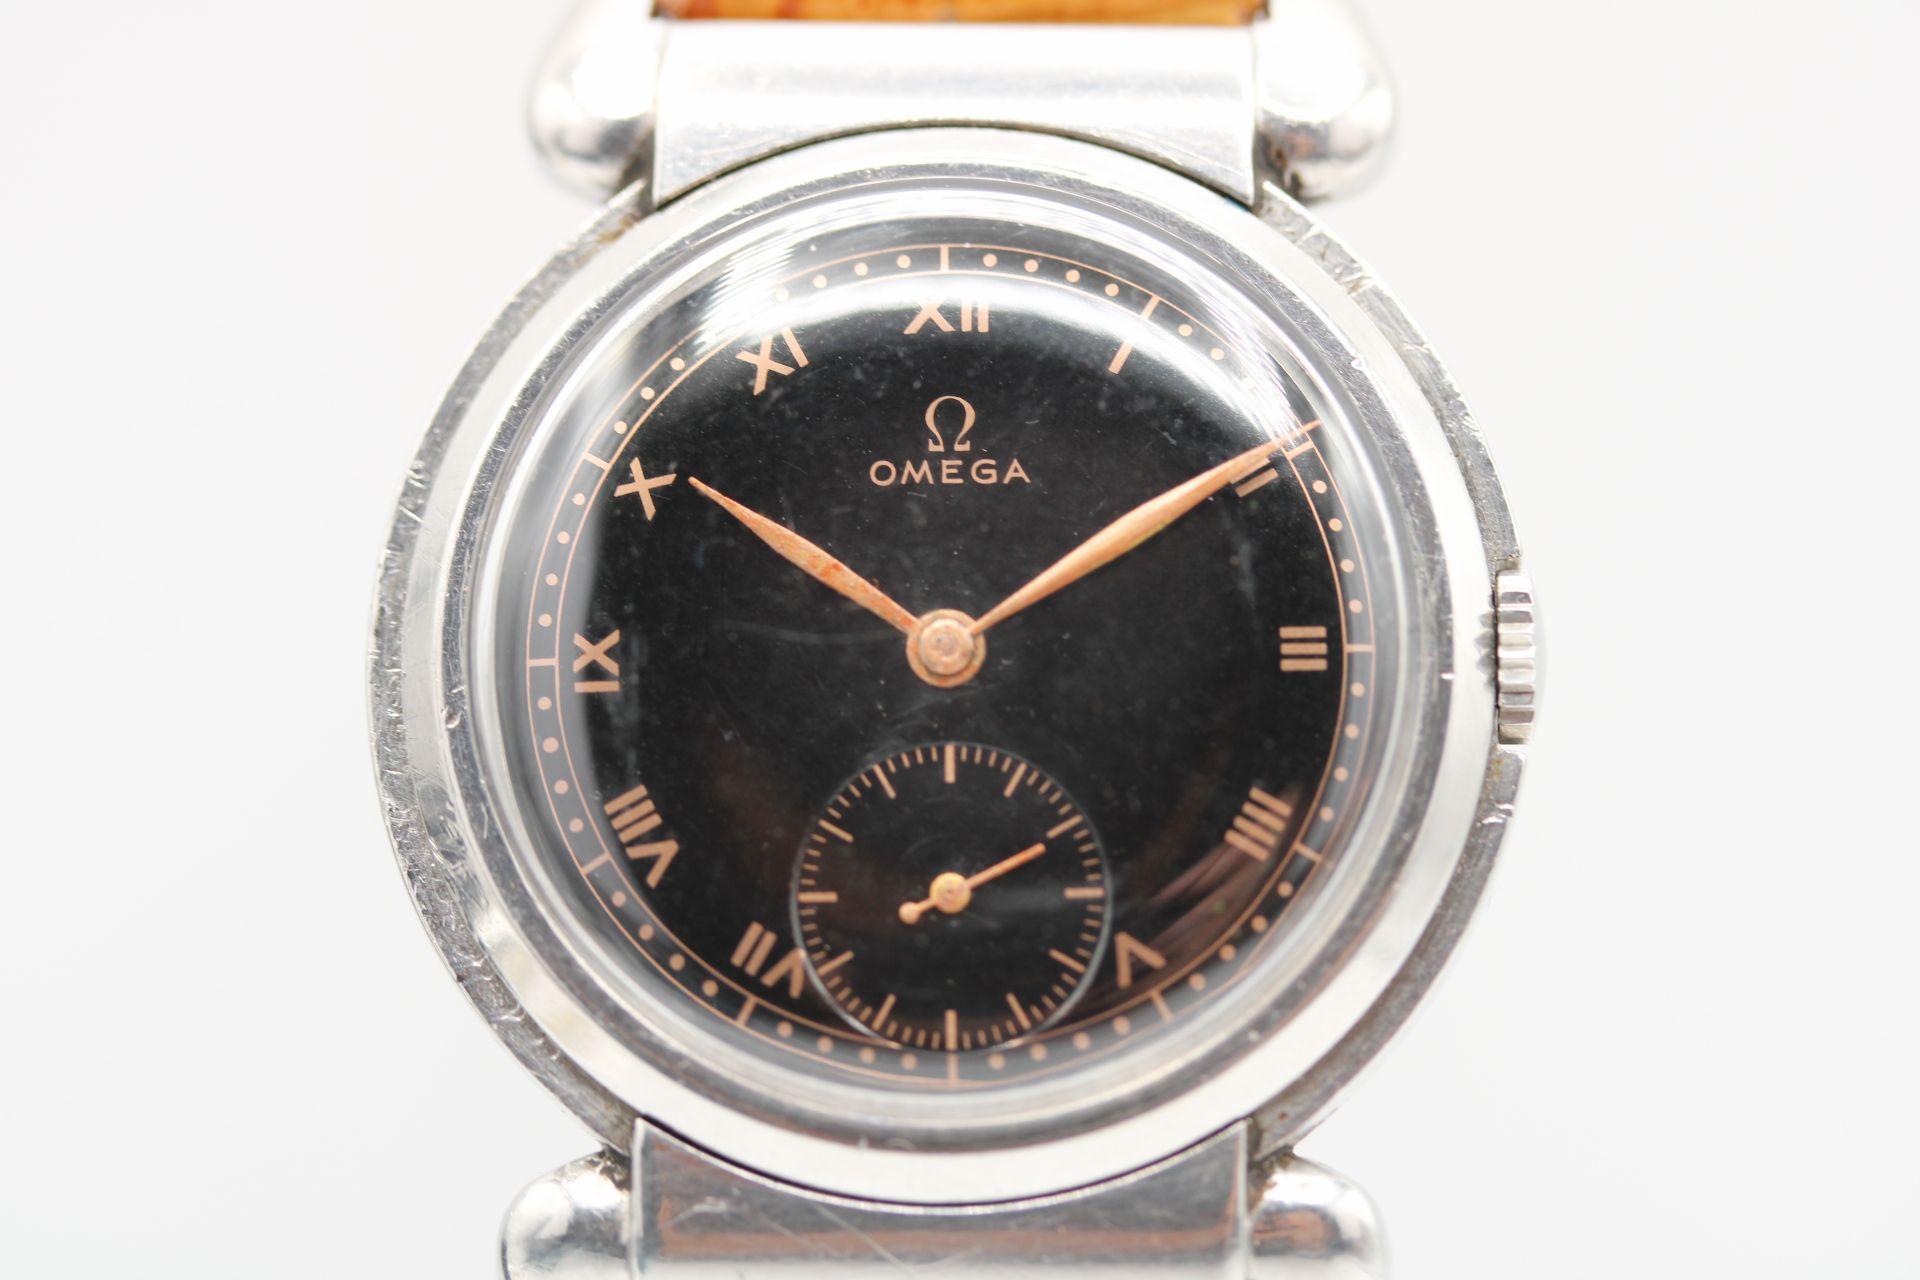 Ein seltener Fund Vintage Omega Bullhorn Ohrstecker Uhr von 1936. In einwandfreiem Zustand ist diese Vintage-Stück in ausgezeichneter rundum Zustand. Seltenes schwarzes vergoldetes Zifferblatt, das in gutem Originalzustand erscheint. Bronzefarbene